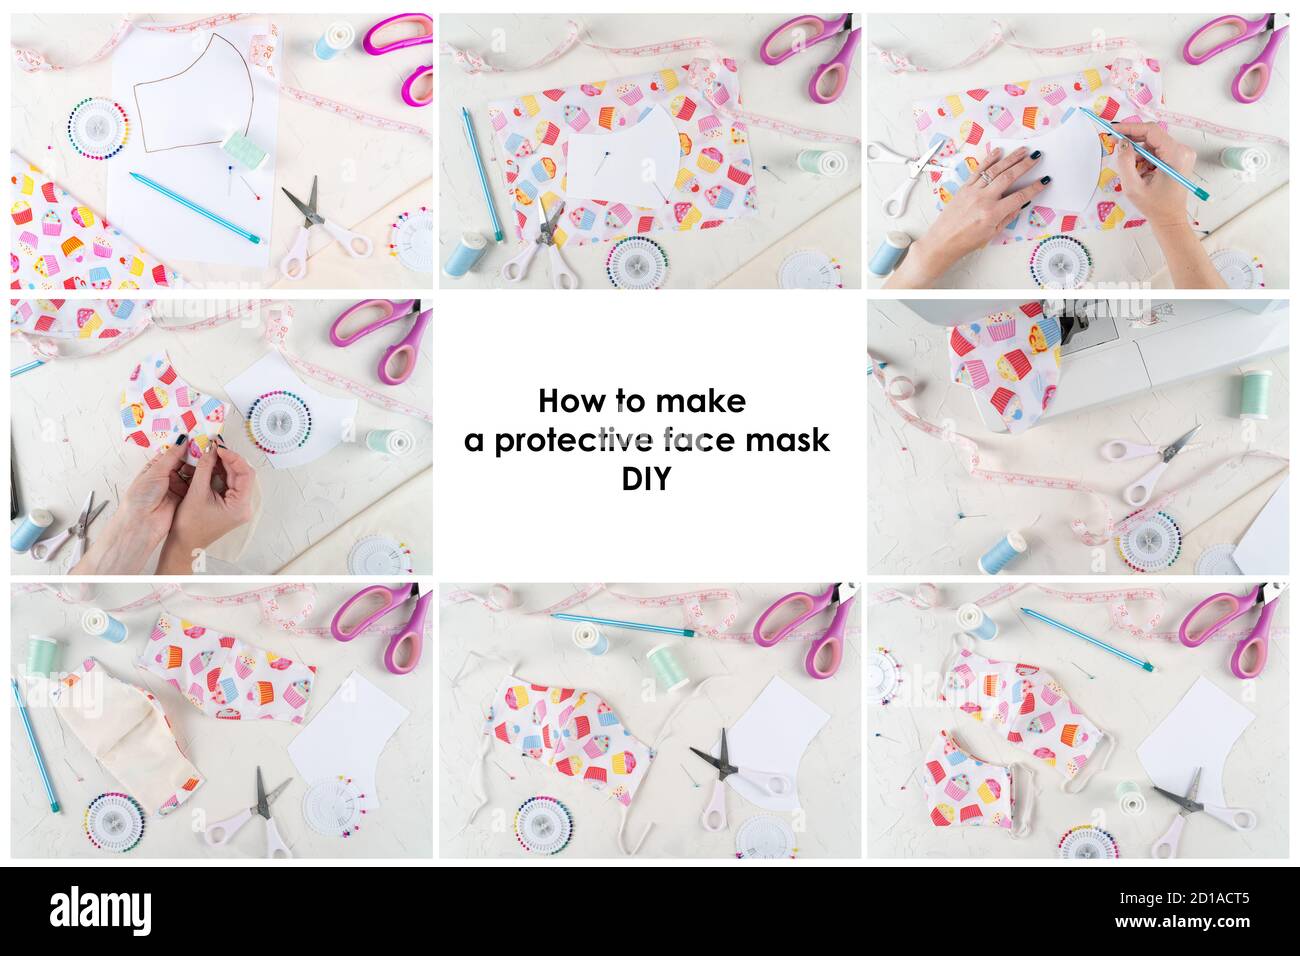 Instructions pour la fabrication d'un masque facial de protection. Créer un  masque de couture, instructions étape par étape. Masque fait à la main.  Outils et matériaux de couture pour masque anti-virus. Zéro